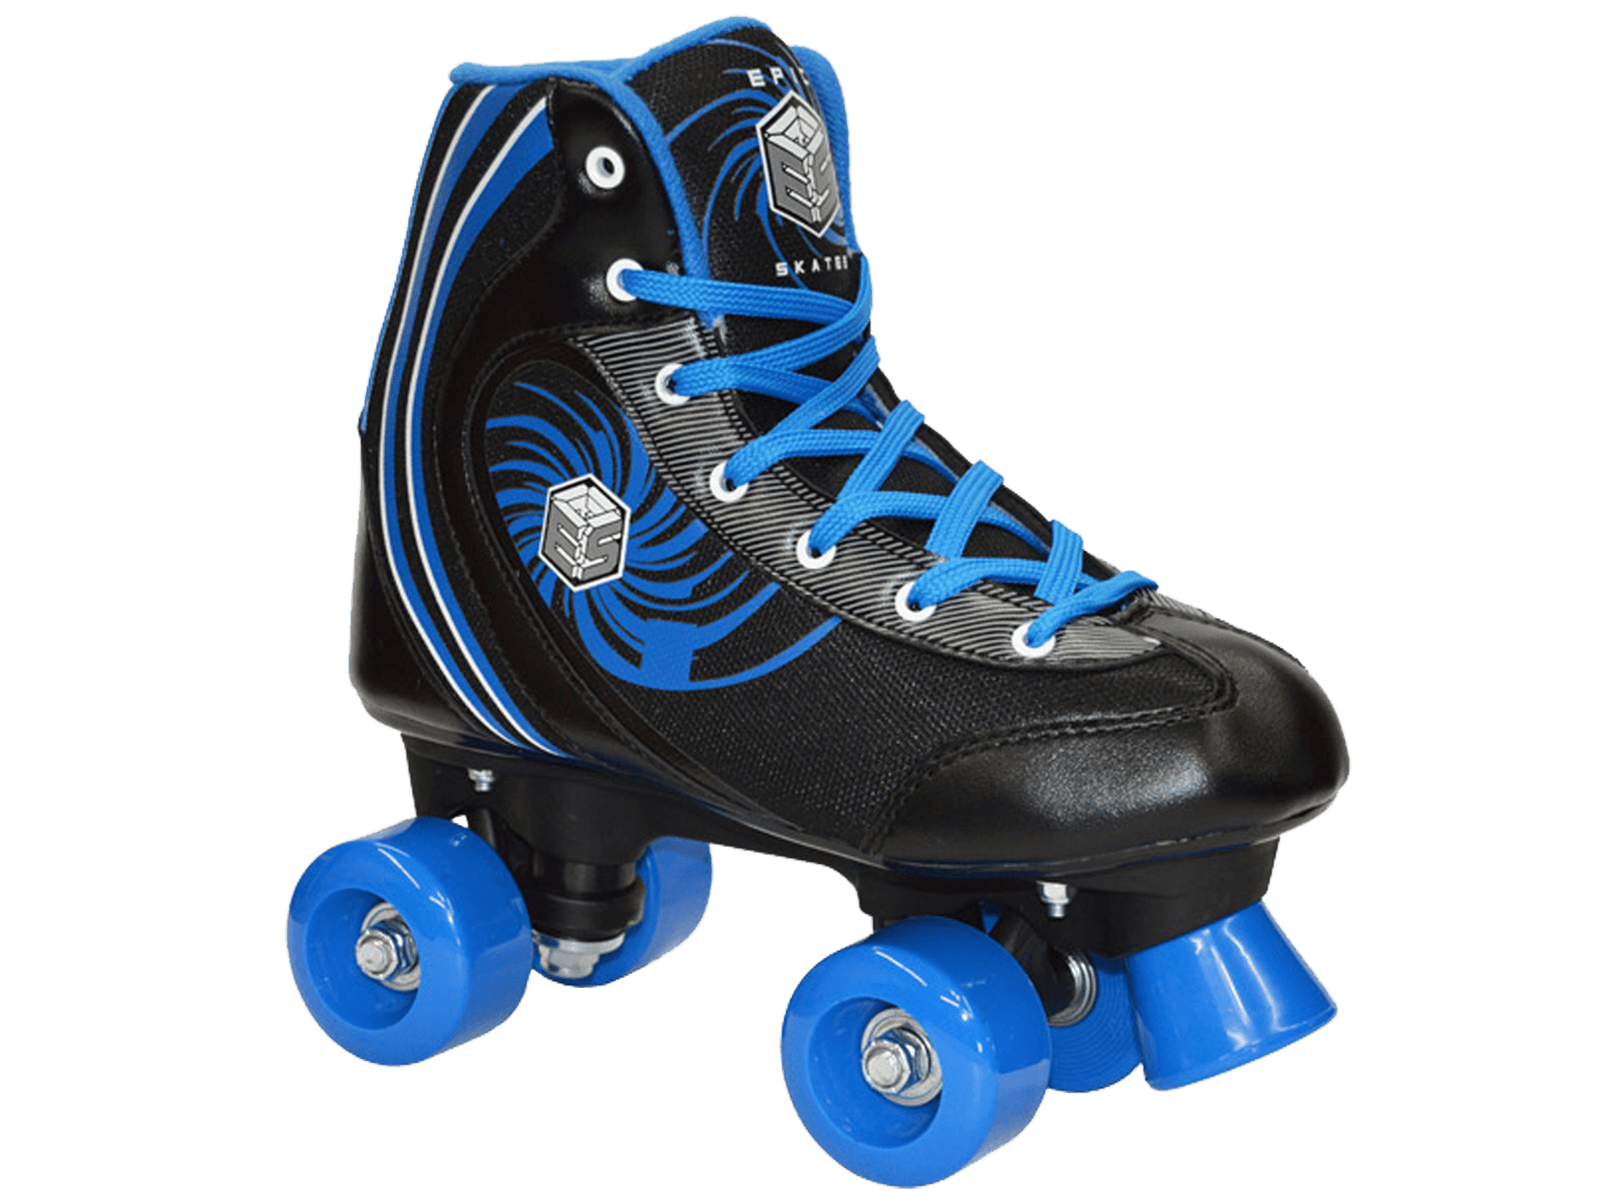 Roller skates PNG image free download